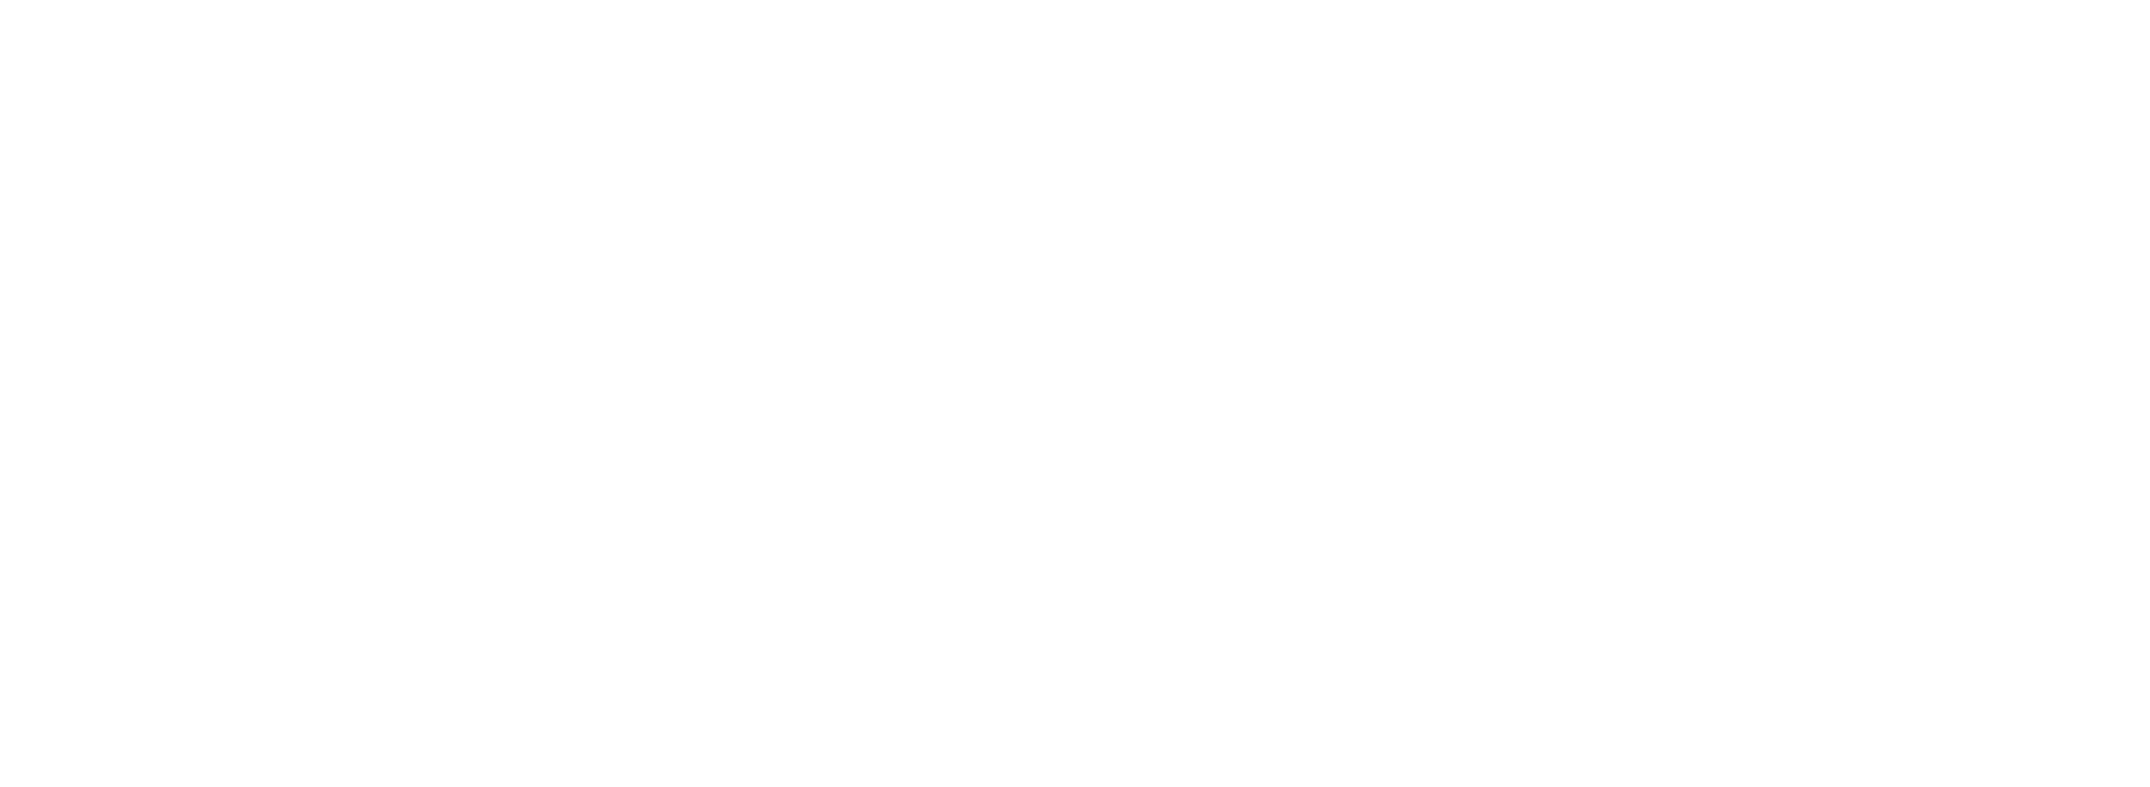 Firma de Pablo Collomb en blanco